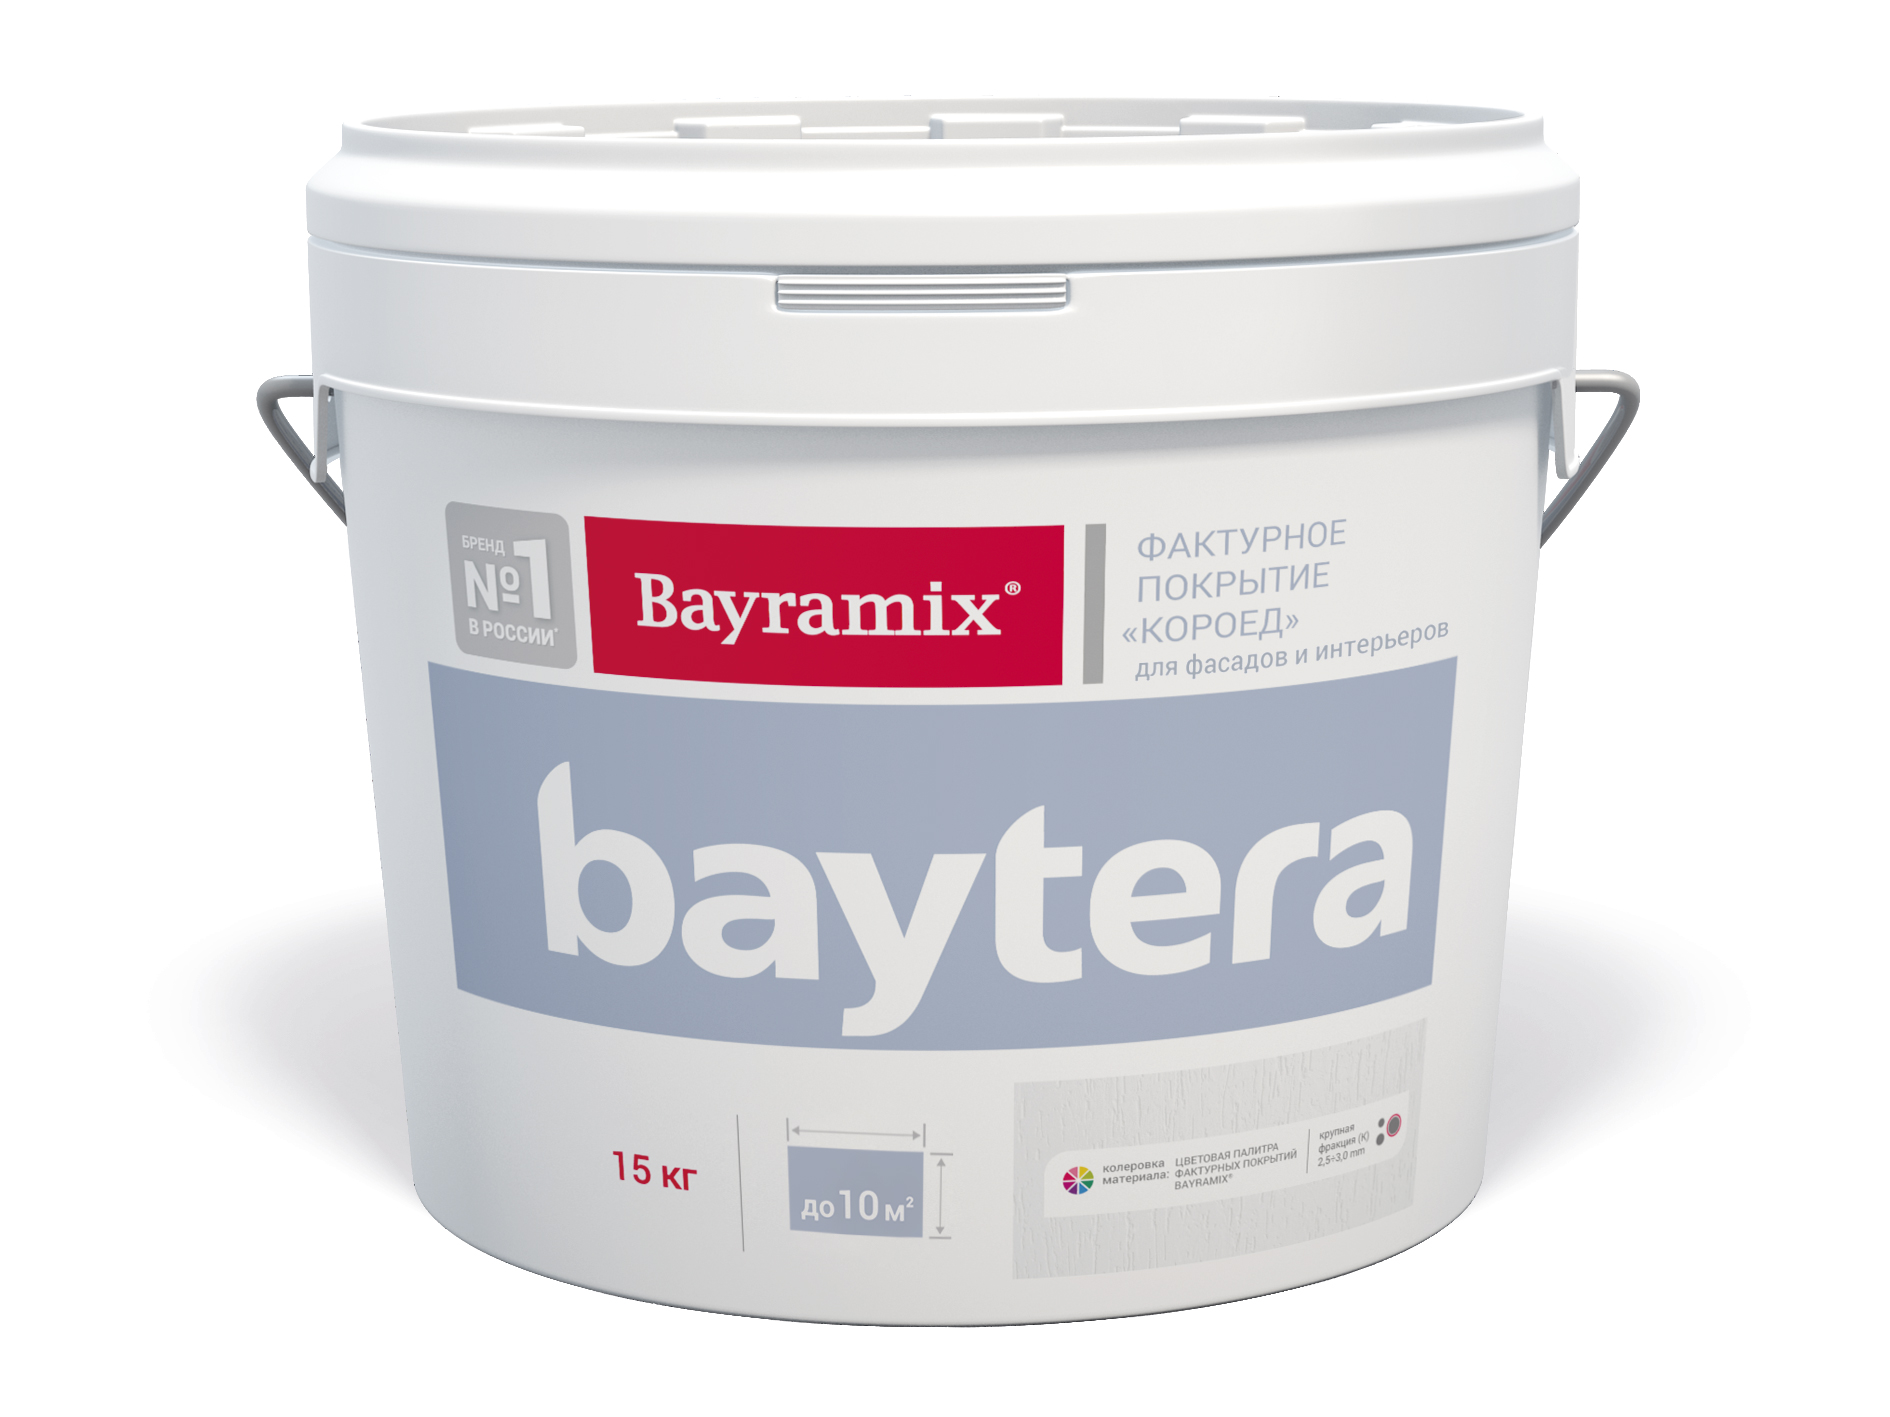 Покрытие Bayramix Baytera T 001 K, фактурное, 15 кг